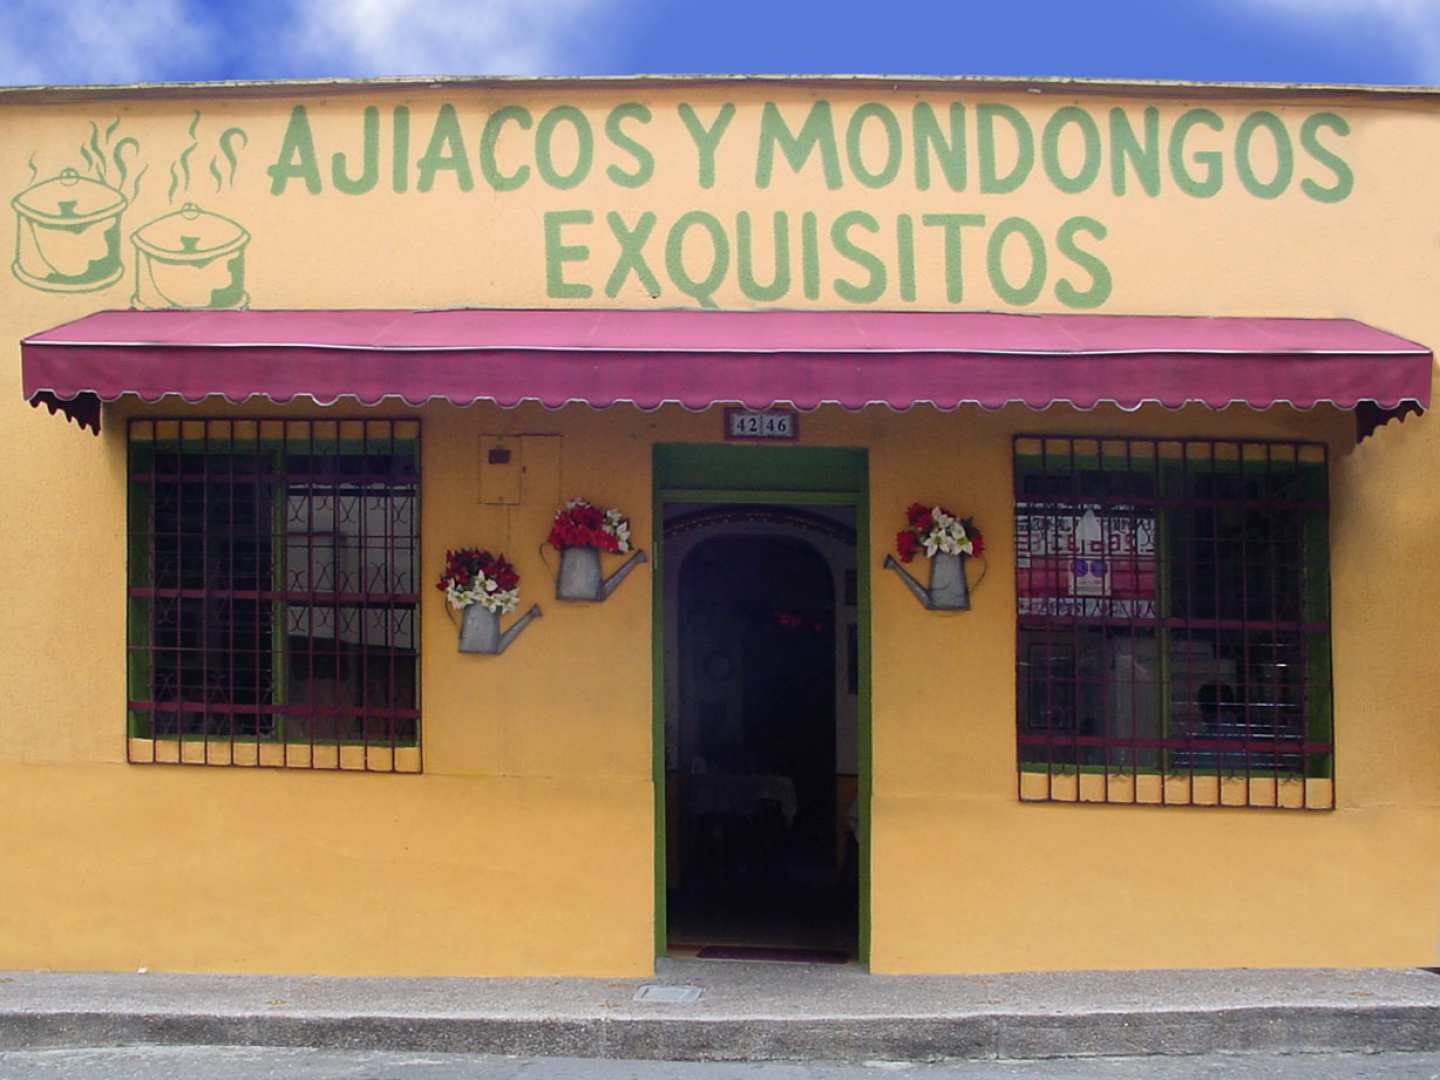 Ajiacos y Mondongos